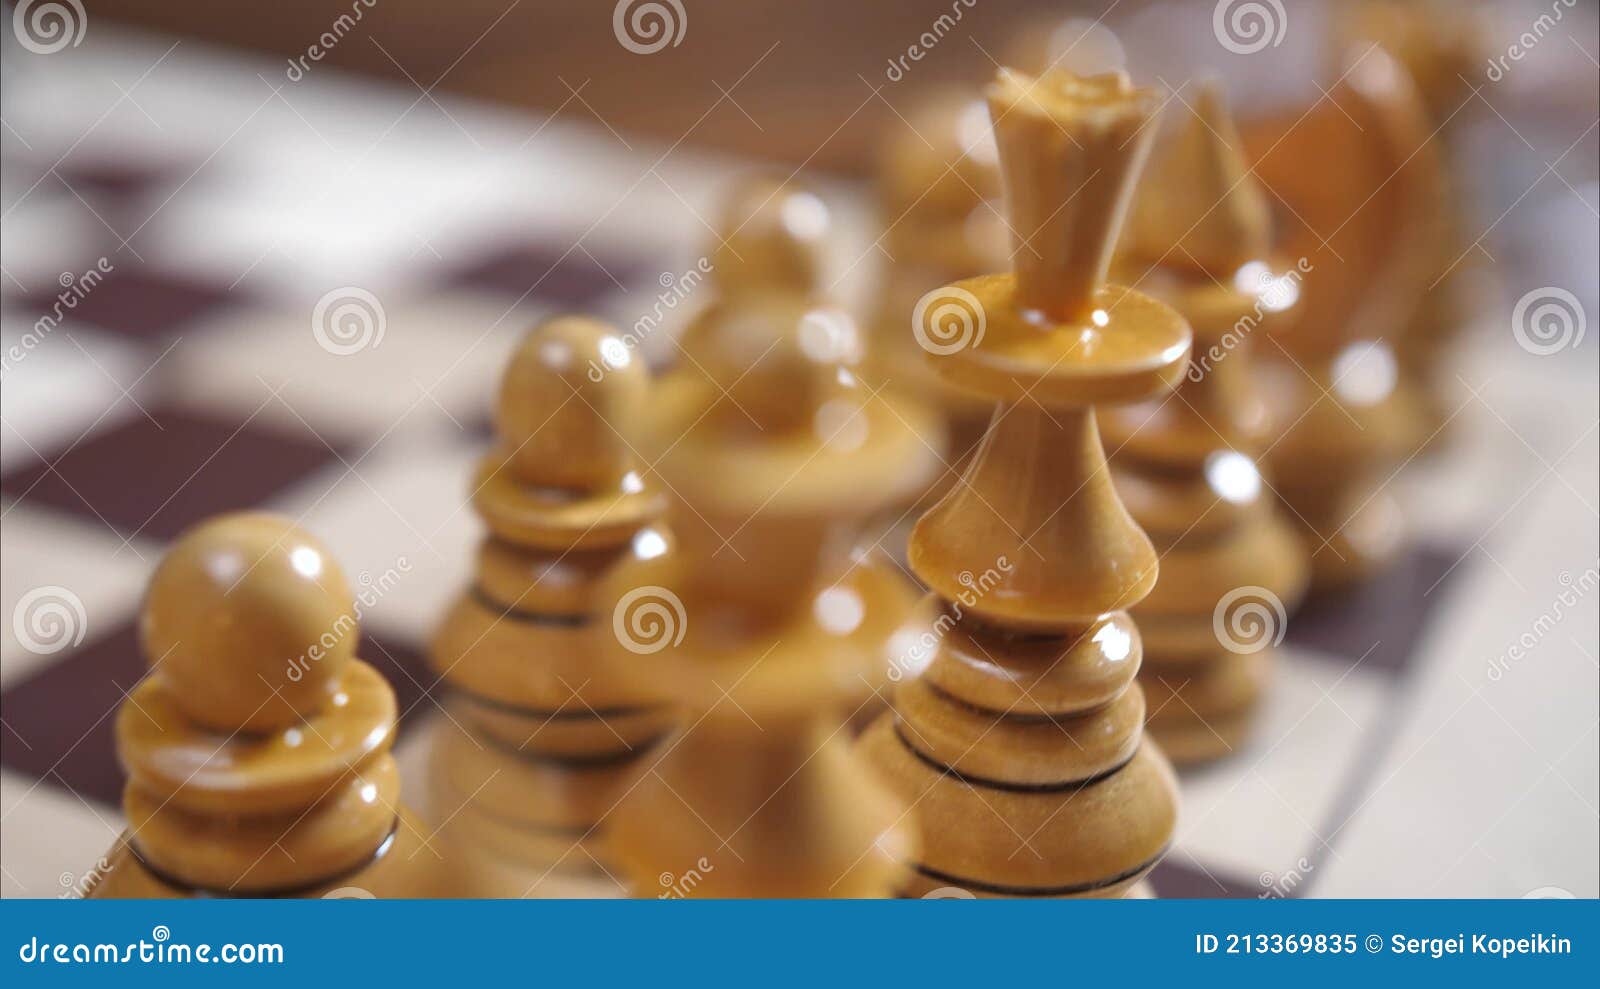 O mundo do xadrez!: Posição Inicial das Peças